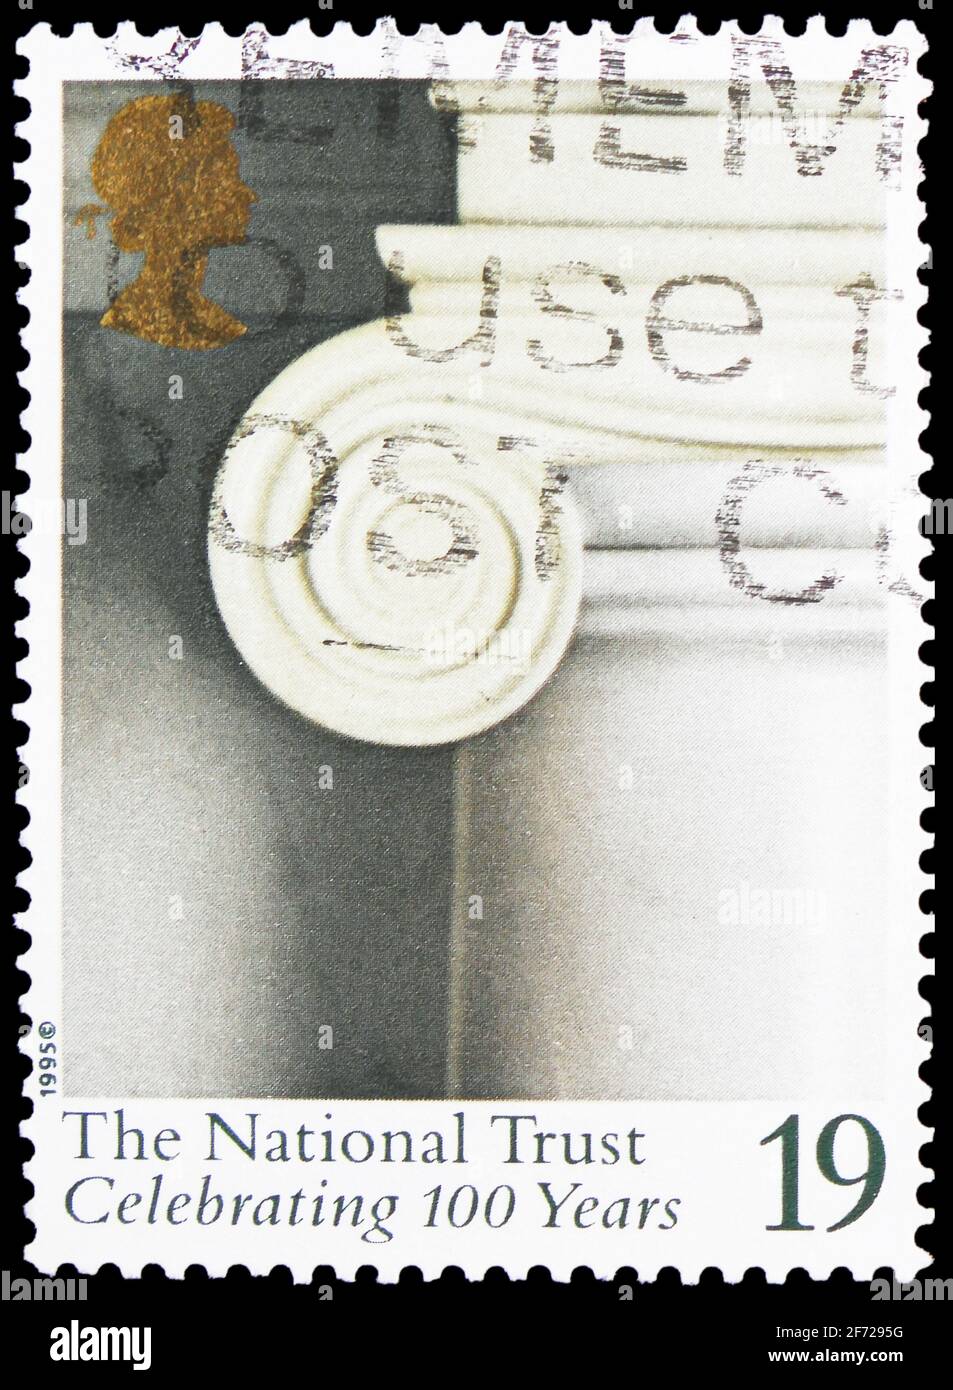 MOSKAU, RUSSLAND - 28. FEBRUAR 2021: Die in Großbritannien gedruckte Briefmarke zeigt Fireplace Decoration, Attingham Park, Shropshire, Centenary of the N Stockfoto